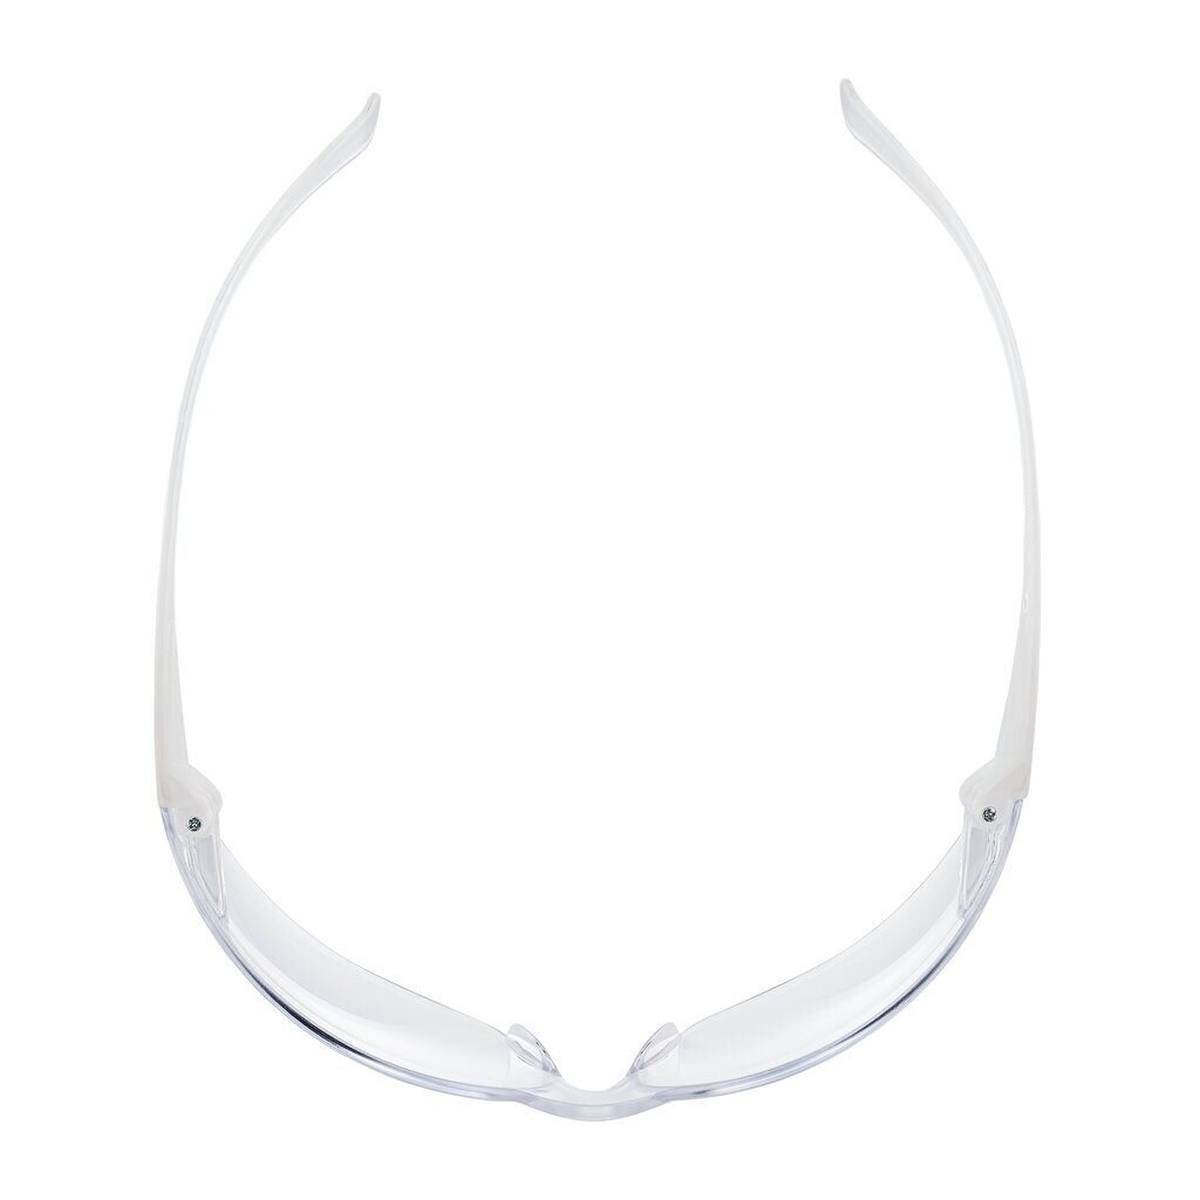 3M Gafas de protección Virtua Slim / Kids Fit con tratamiento antirrayas/antivaho, lentes transparentes, 71500-00008